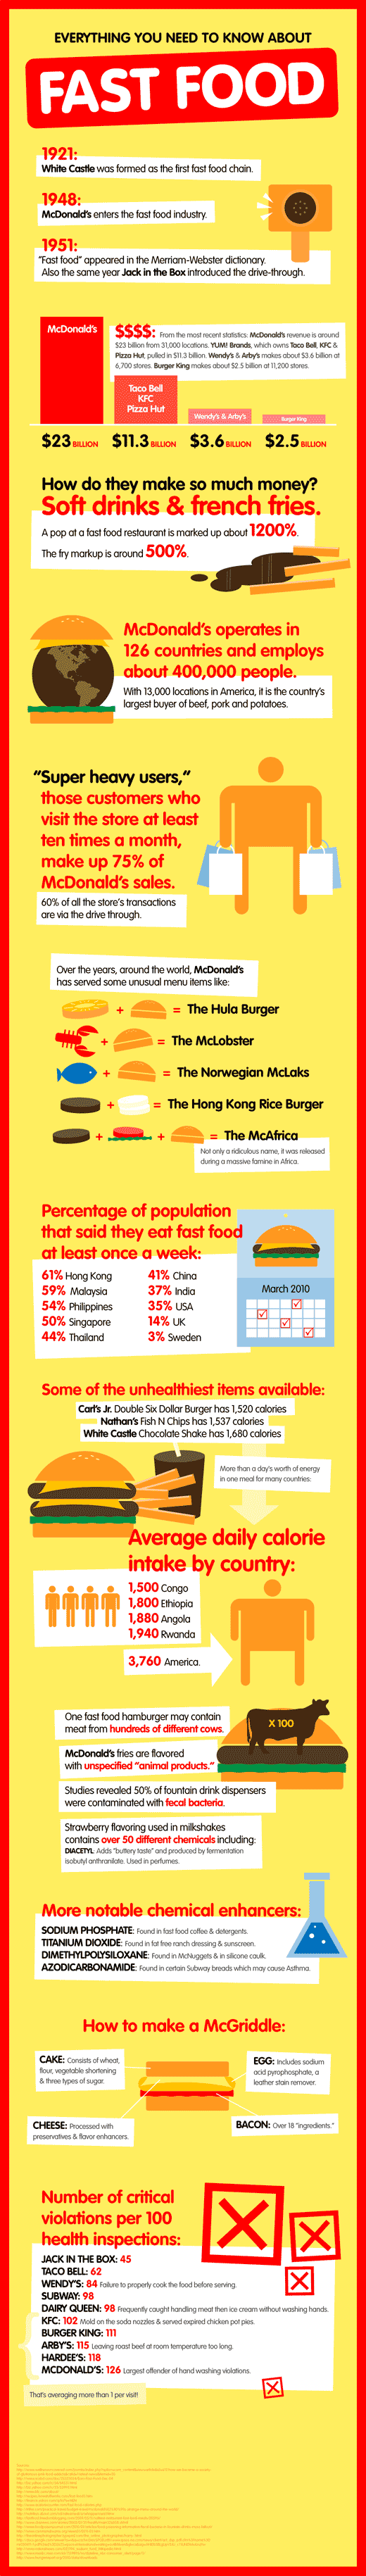 fastfood-image-chart